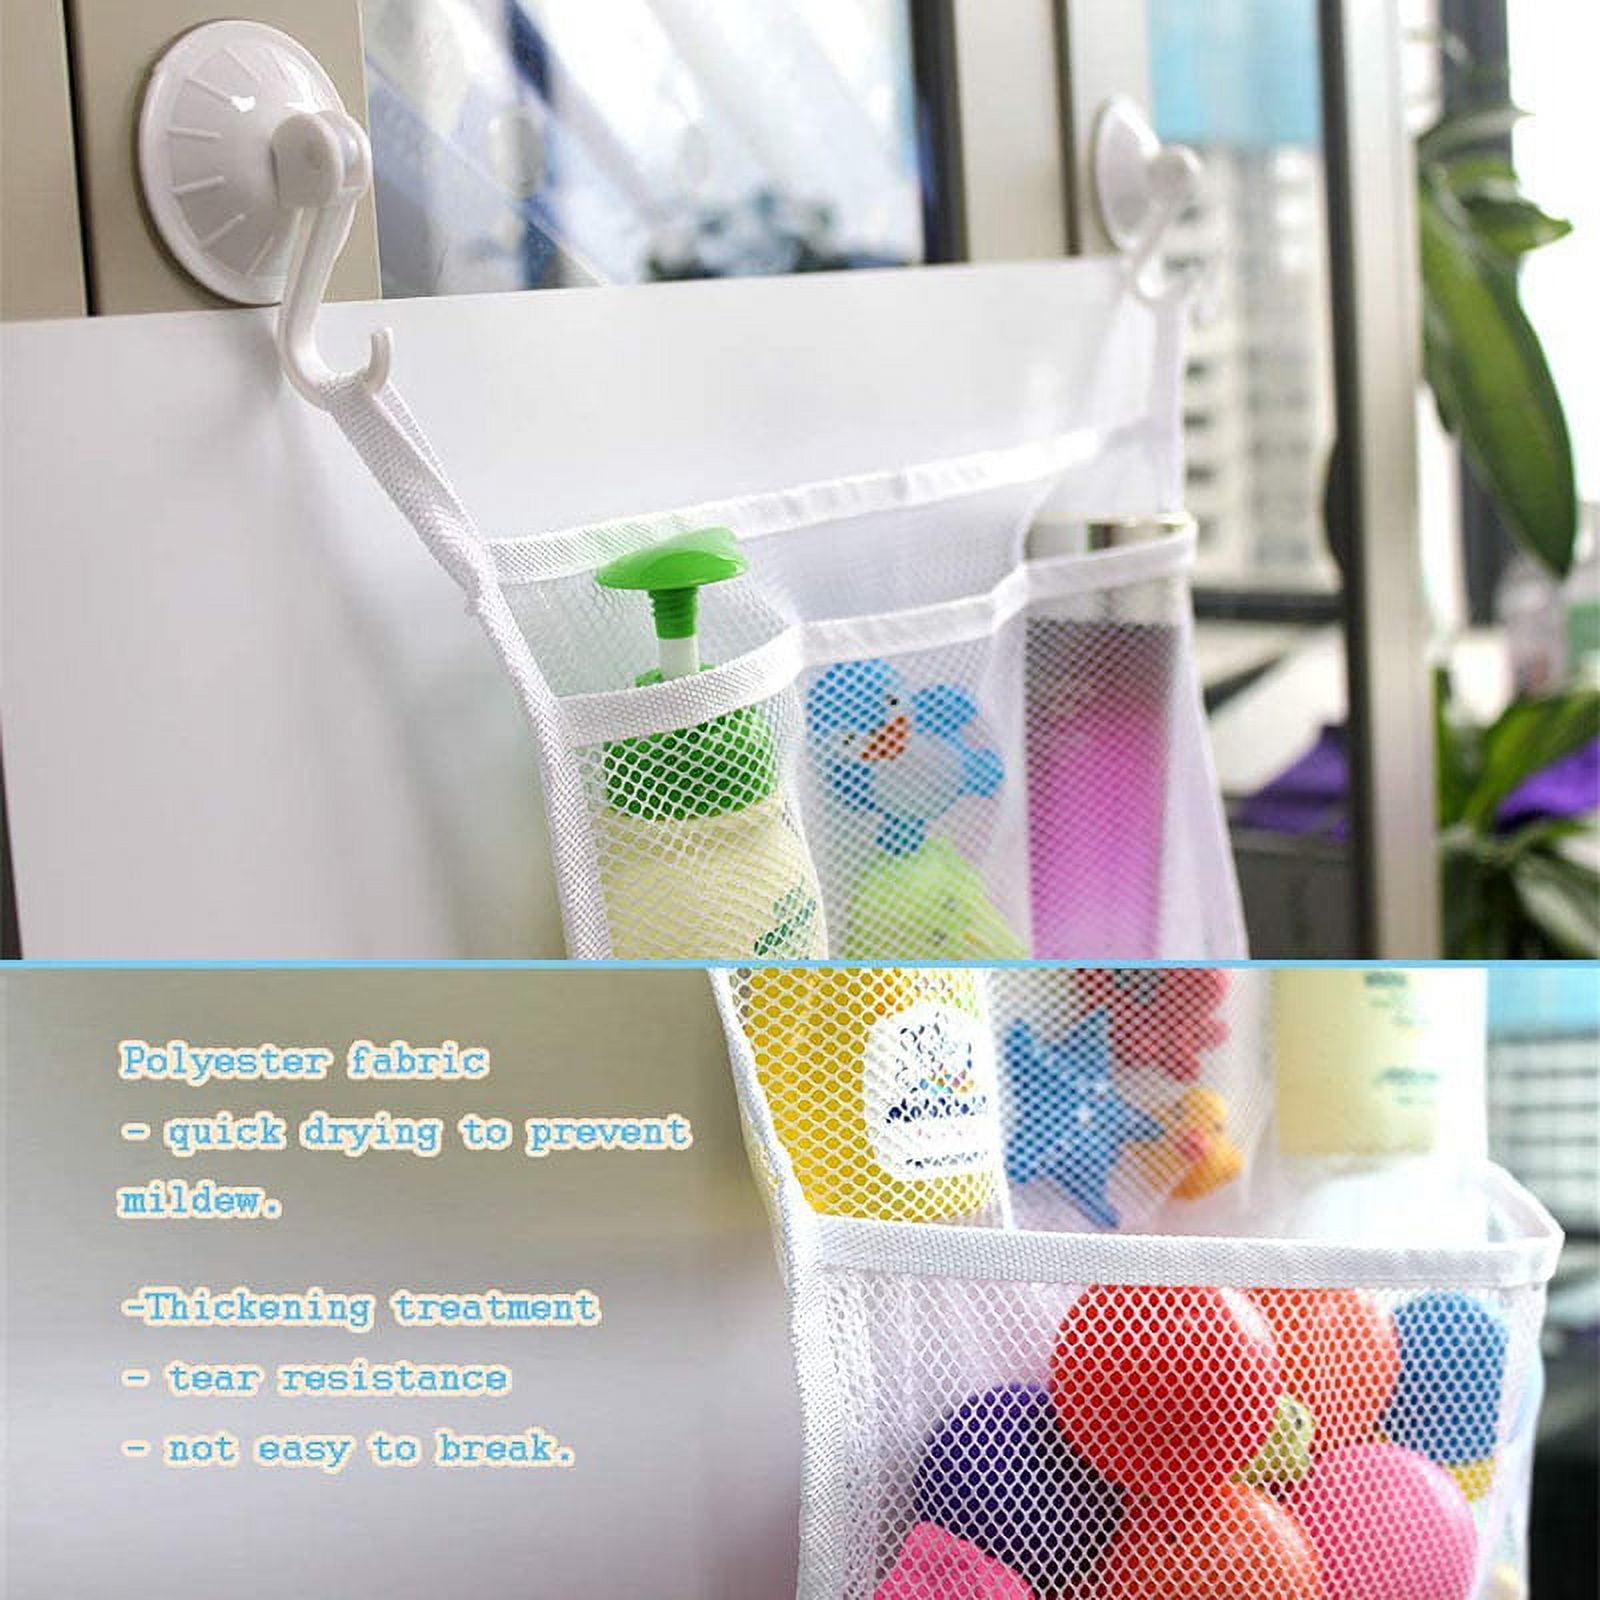 Yesbay Bathroom Organizer Net Baby Bath Time Tidy Storage Toy Suction Cup  Mesh Bag,Bathroom Mesh Bag-Sky Blue